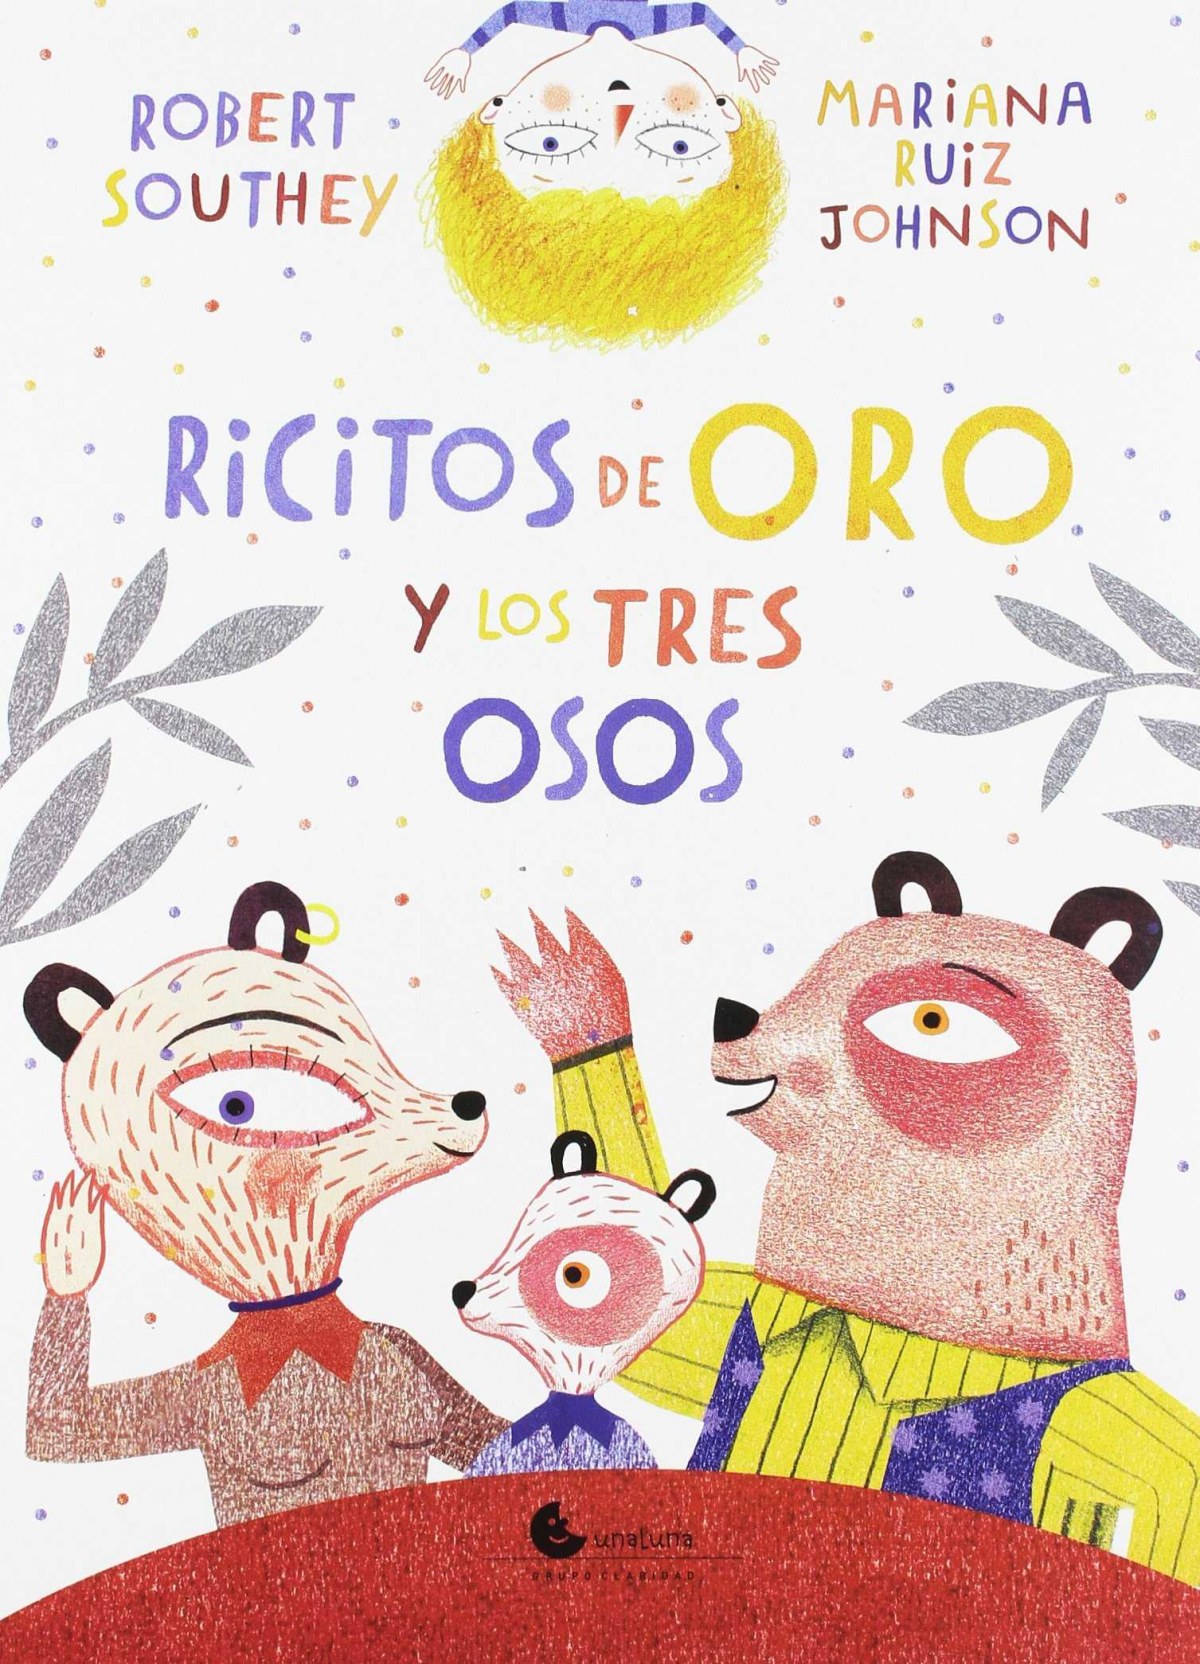 Ricitos de oro y los tres osos - Ruiz Johnson, Mariana